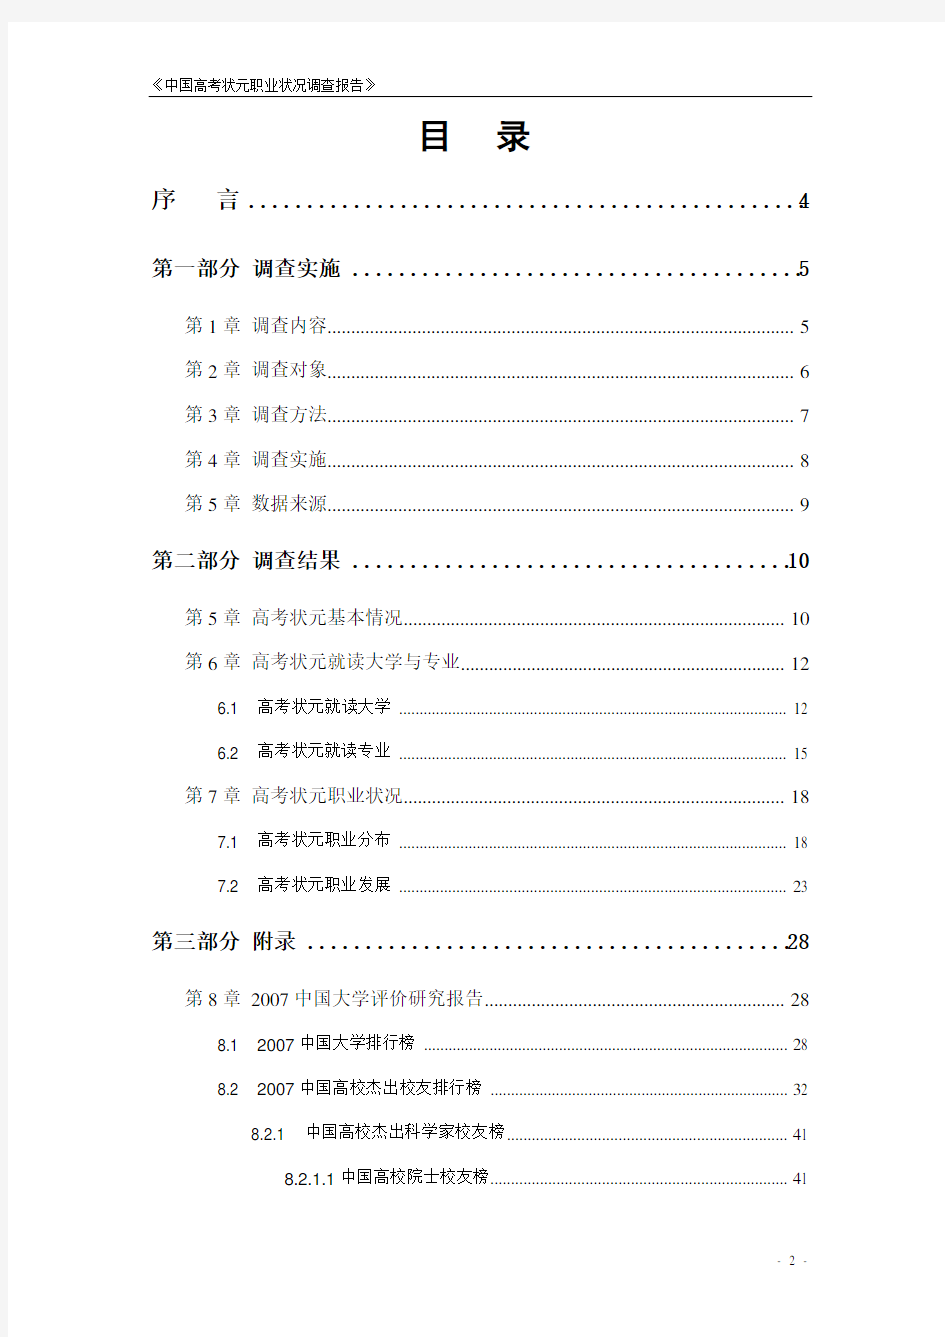 中国高考状元职业状况